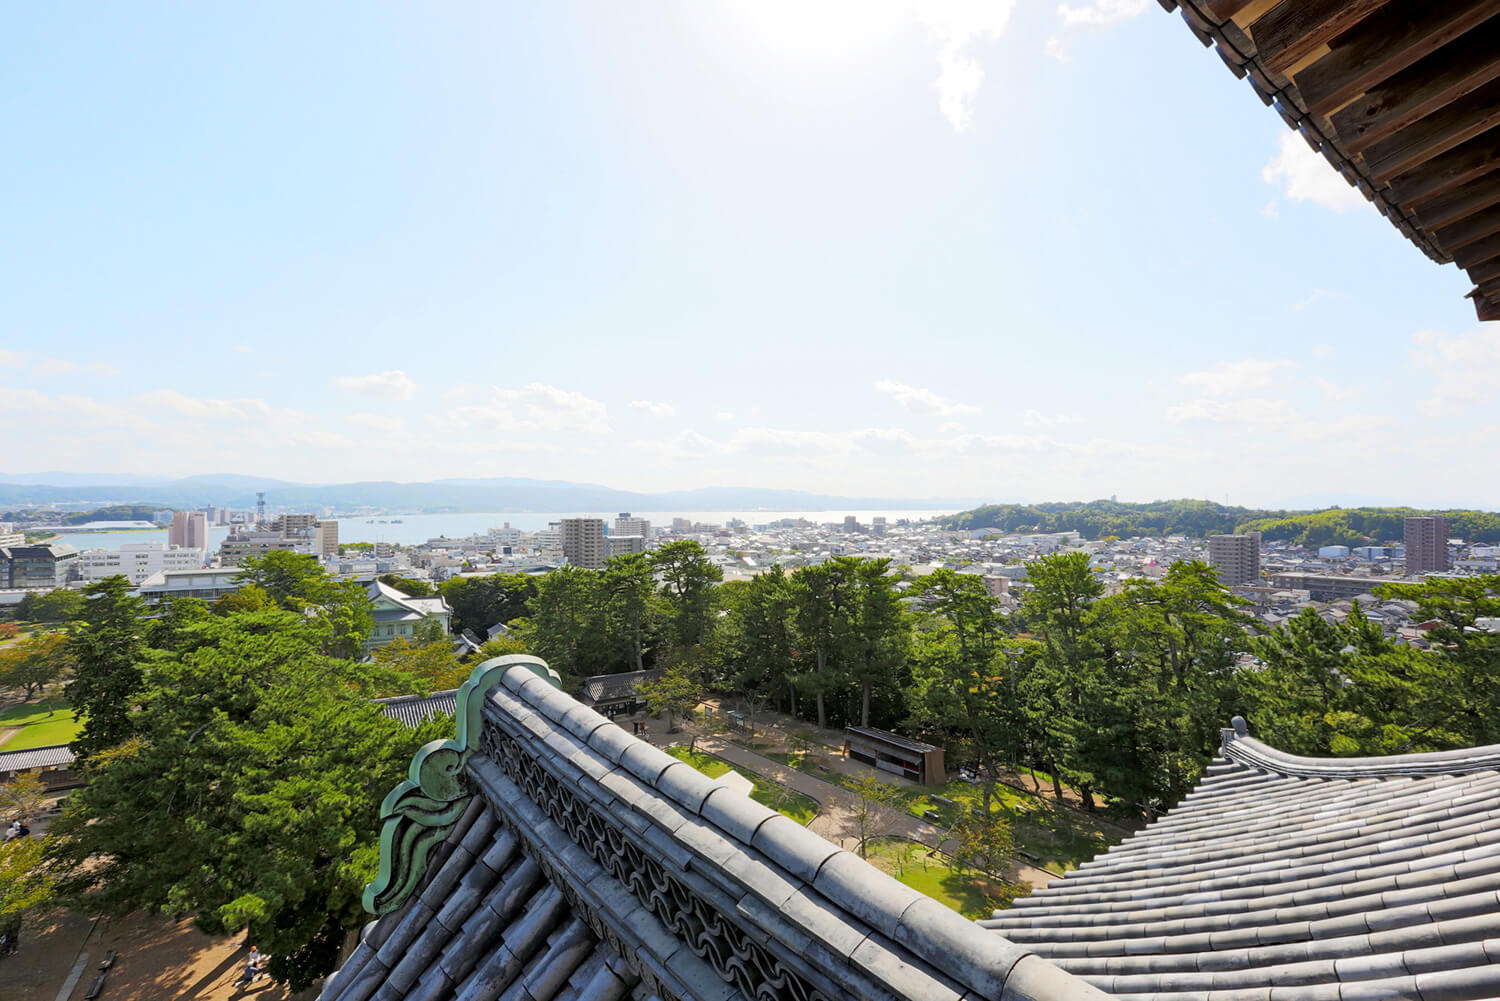 天守閣から望む松江の風景。市街地の奥には宍道湖が見える